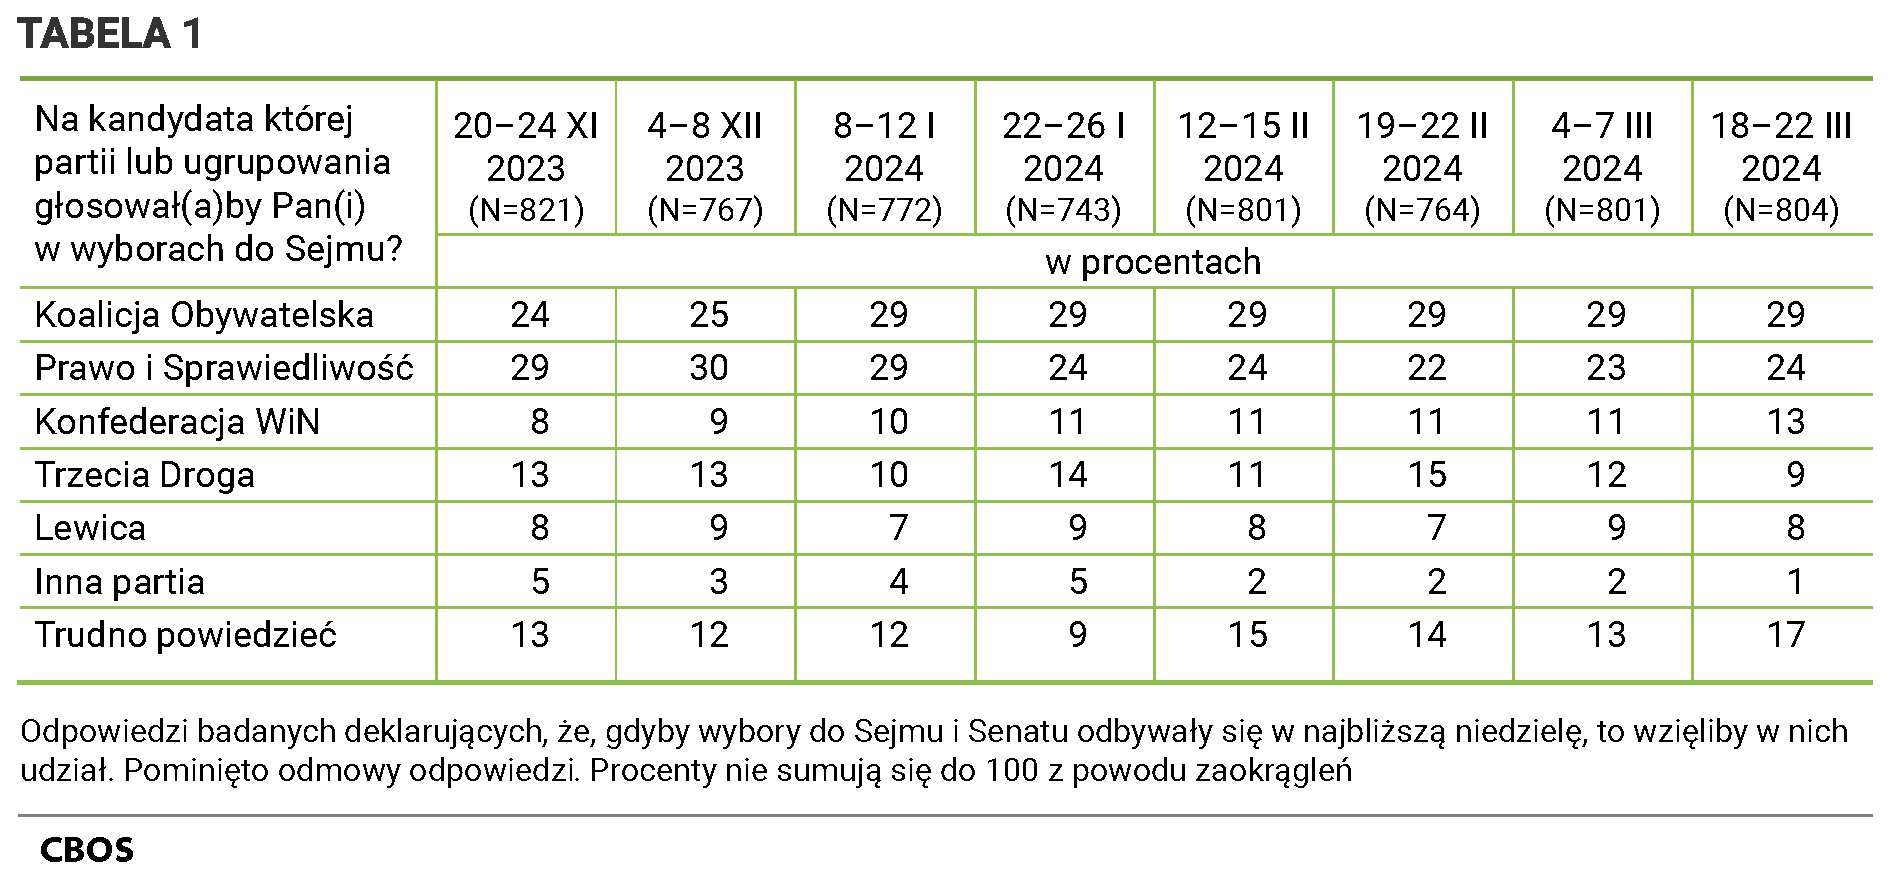 Tabela 1 Na kandydata której partii lub ugrupowania głosowałby (głosowałaby) Pan(Pani) w wyborach do Sejmu? Odpowiedzi badanych deklarujących, że, gdyby wybory do Sejmu i Senatu odbywały się w najbliższą niedzielę, to wzięliby w nich udział. Pominięto odmowy odpowiedzi. Procenty nie sumują się do 100 z powodu zaokrągleń. Odpowiedzi według terminów badań. do 20 do 24 listopada 2023 (N=821) Koalicja Obywatelska - 24%, Prawo i Sprawiedliwość - 29%, Trzecia Droga - 13%, Konfederacja - 8%, Lewica - 8%, Inna partia - 5%, Trudno powiedzieć - 13%; od 4 do 8 grudnia 2023 (N=767) Koalicja Obywatelska - 25%, Prawo i Sprawiedliwość - 30%, Trzecia Droga - 13%, Konfederacja - 9%, Lewica - 9%, Inna partia - 3%, Trudno powiedzieć - 12%; od 8. do 12. stycznia 2024 (N=772) Koalicja Obywatelska - 29%, Prawo i Sprawiedliwość - 29%, Trzecia Droga - 10%, Konfederacja - 10%, Lewica - 7%, Inna partia - 4%, Trudno powiedzieć - 12% od 22. do 26. stycznia 2024 (N=743) Koalicja Obywatelska - 29%, Prawo i Sprawiedliwość - 24%, Trzecia Droga - 14%, Konfederacja - 11%, Lewica - 9%, Inna partia - 5%, Trudno powiedzieć - 9%; od 12. do 15. lutego 2024 (N=801) Koalicja Obywatelska - 29%, Prawo i Sprawiedliwość - 24%, Trzecia Droga - 11%, Konfederacja - 11%, Lewica - 8%, Inna partia - 2%, Trudno powiedzieć - 15%; od 19. do 22. lutego 2024 (N=764) Koalicja Obywatelska - 29%, Prawo i Sprawiedliwość - 22%, Trzecia Droga - 15%, Konfederacja - 11%, Lewica - 7%, Inna partia - 2%, Trudno powiedzieć - 14%; od 4. do 7. marca 2024 (N=801) Koalicja Obywatelska - 29%, Prawo i Sprawiedliwość - 23%, Trzecia Droga - 12%, Konfederacja - 11%, Lewica - 9%, Inna partia - 2%, Trudno powiedzieć - 13%; od 18. do 22. marca 2024 (N=804) Koalicja Obywatelska - 29%, Prawo i Sprawiedliwość - 24%, Konfederacja Wolność i Niepodległość - 13%, Trzecia Droga - 9%, Lewica - 8%, Inna partia - 1%, Trudno powiedzieć - 17% .